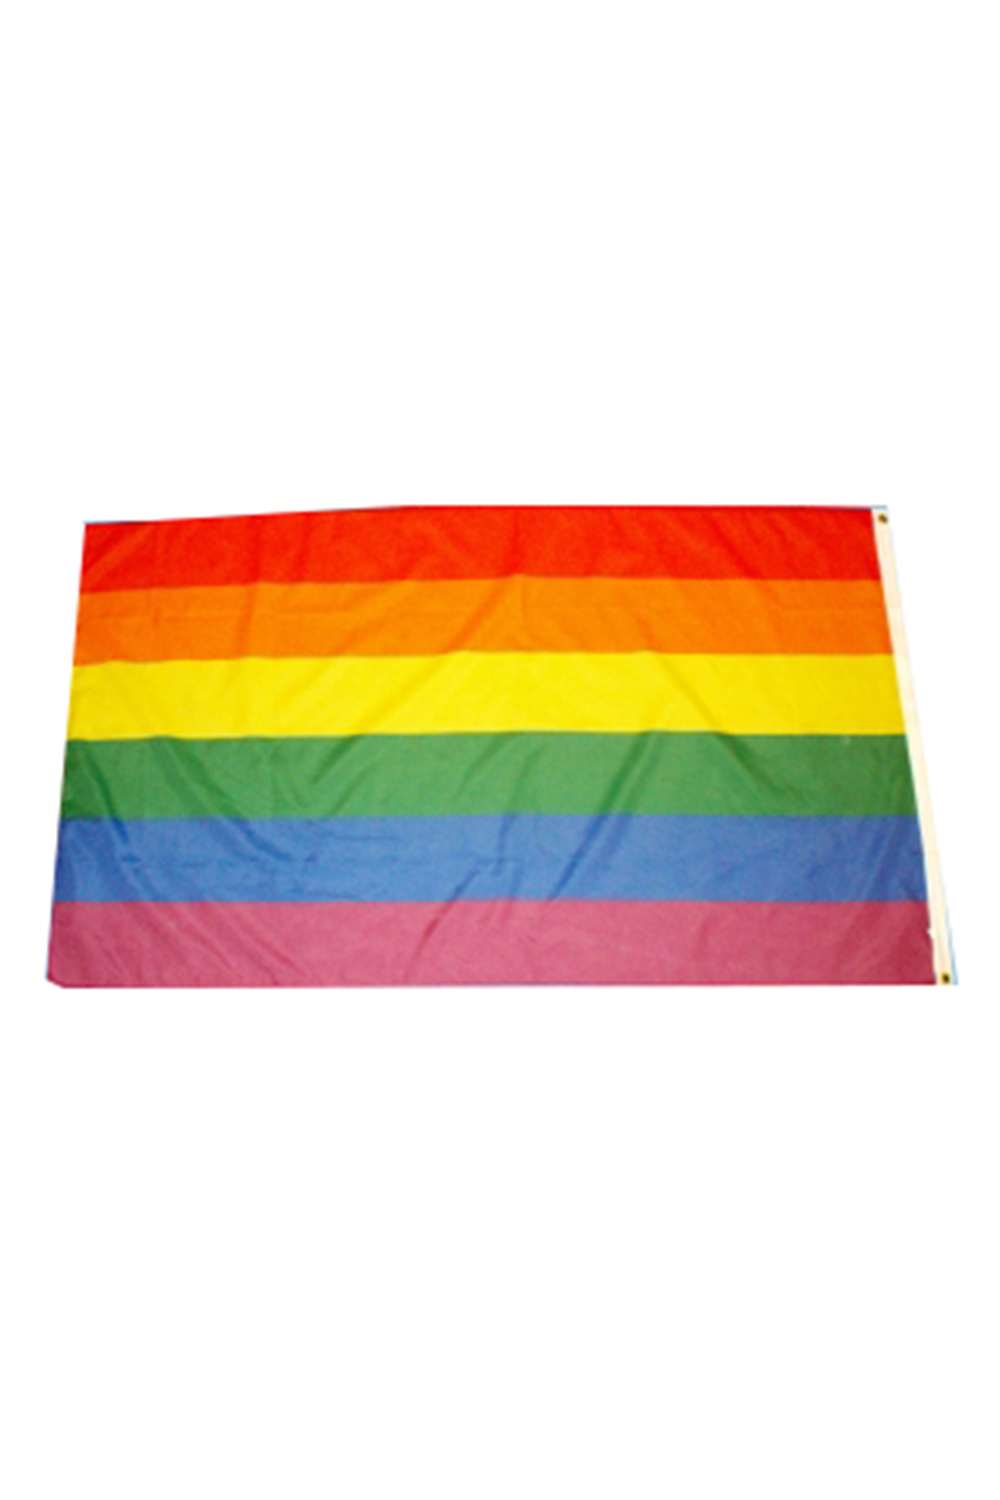 Rainbow Flag (5ft X 3ft)